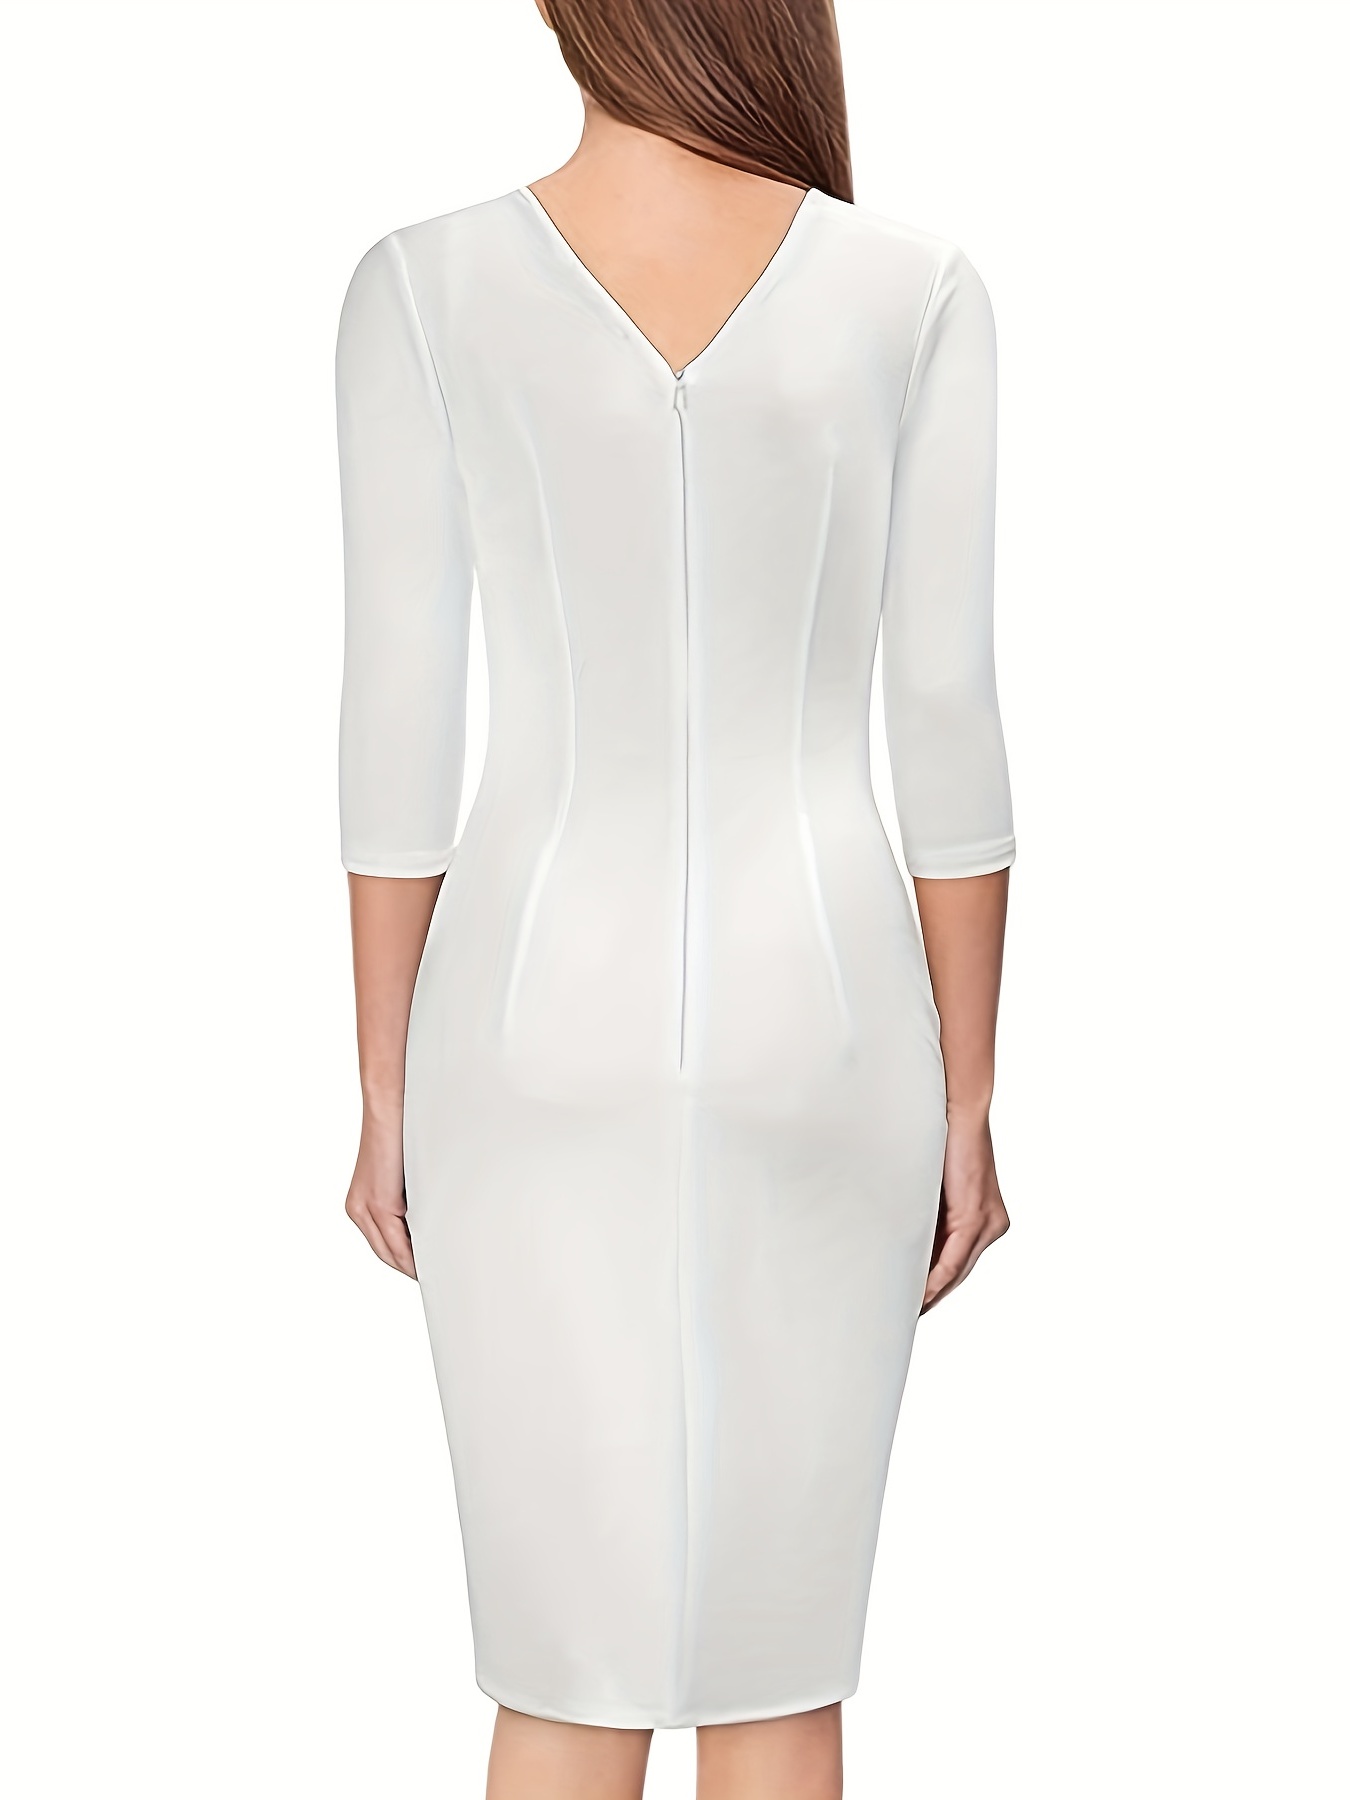 Vestido Blanco Sólido De Oficina Para Mujer, Vestido Ajustado De